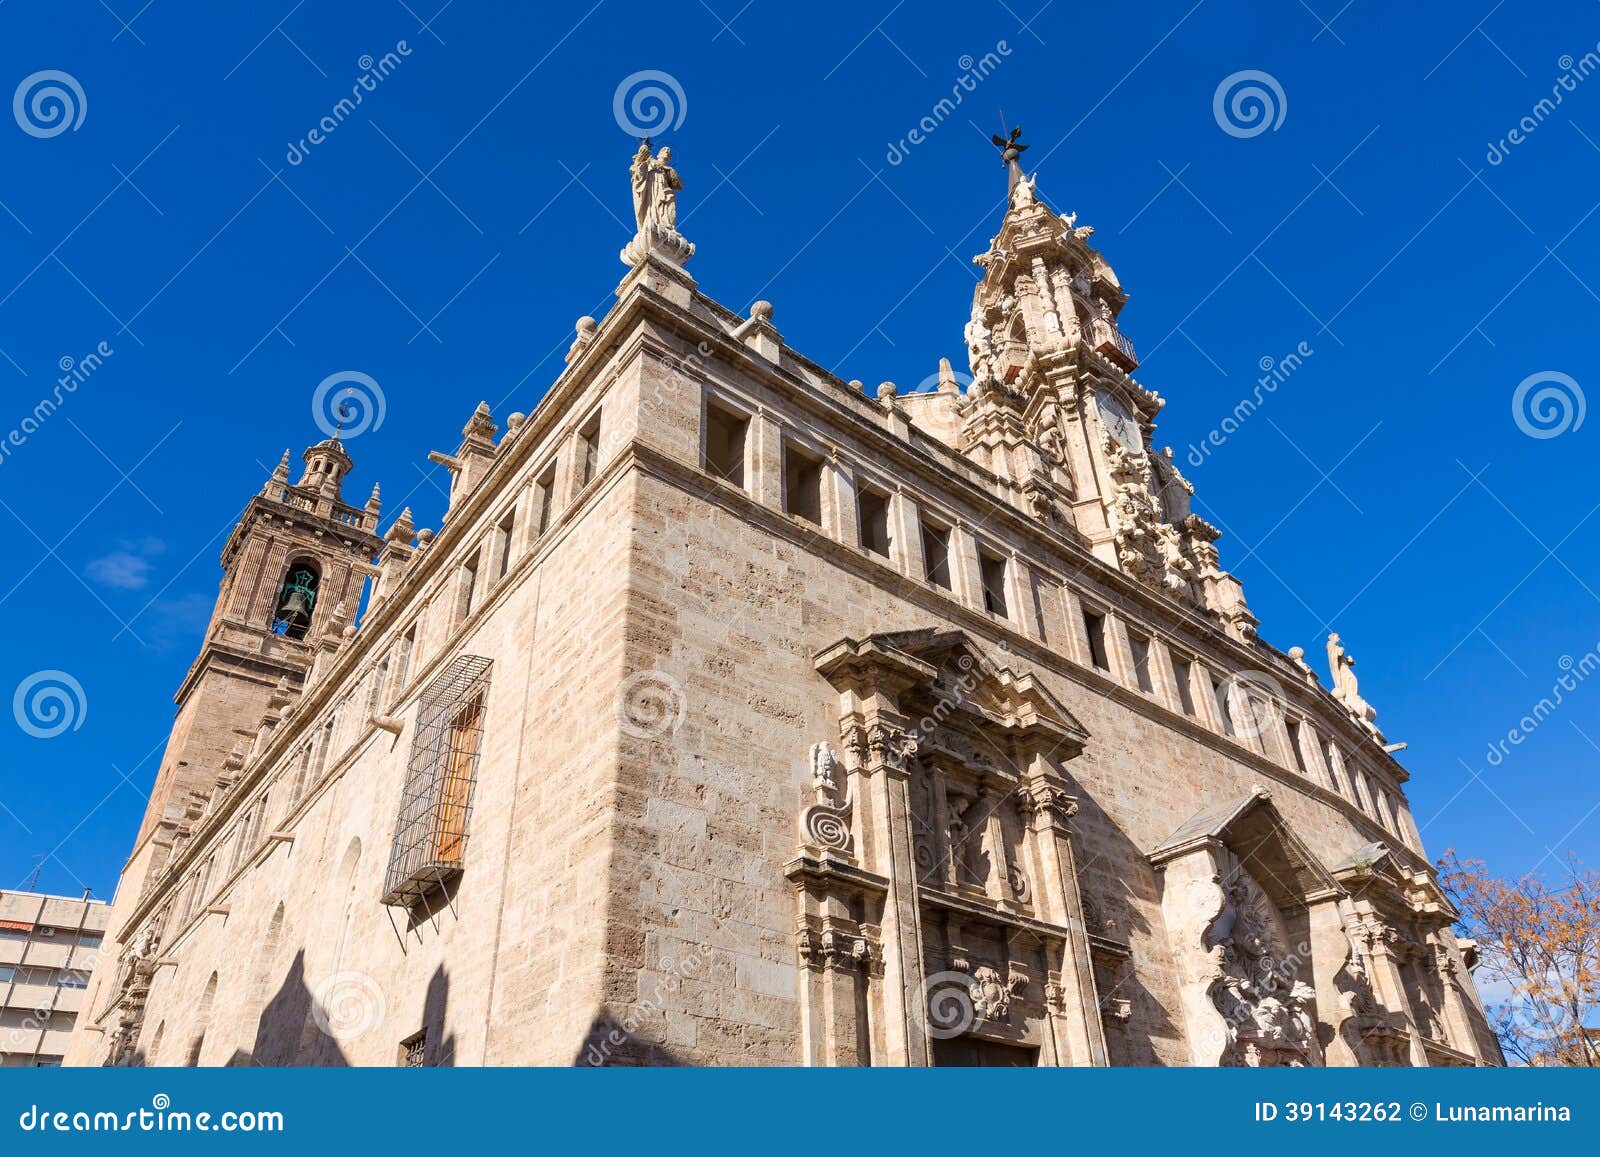 valencia santos juanes church facade spain